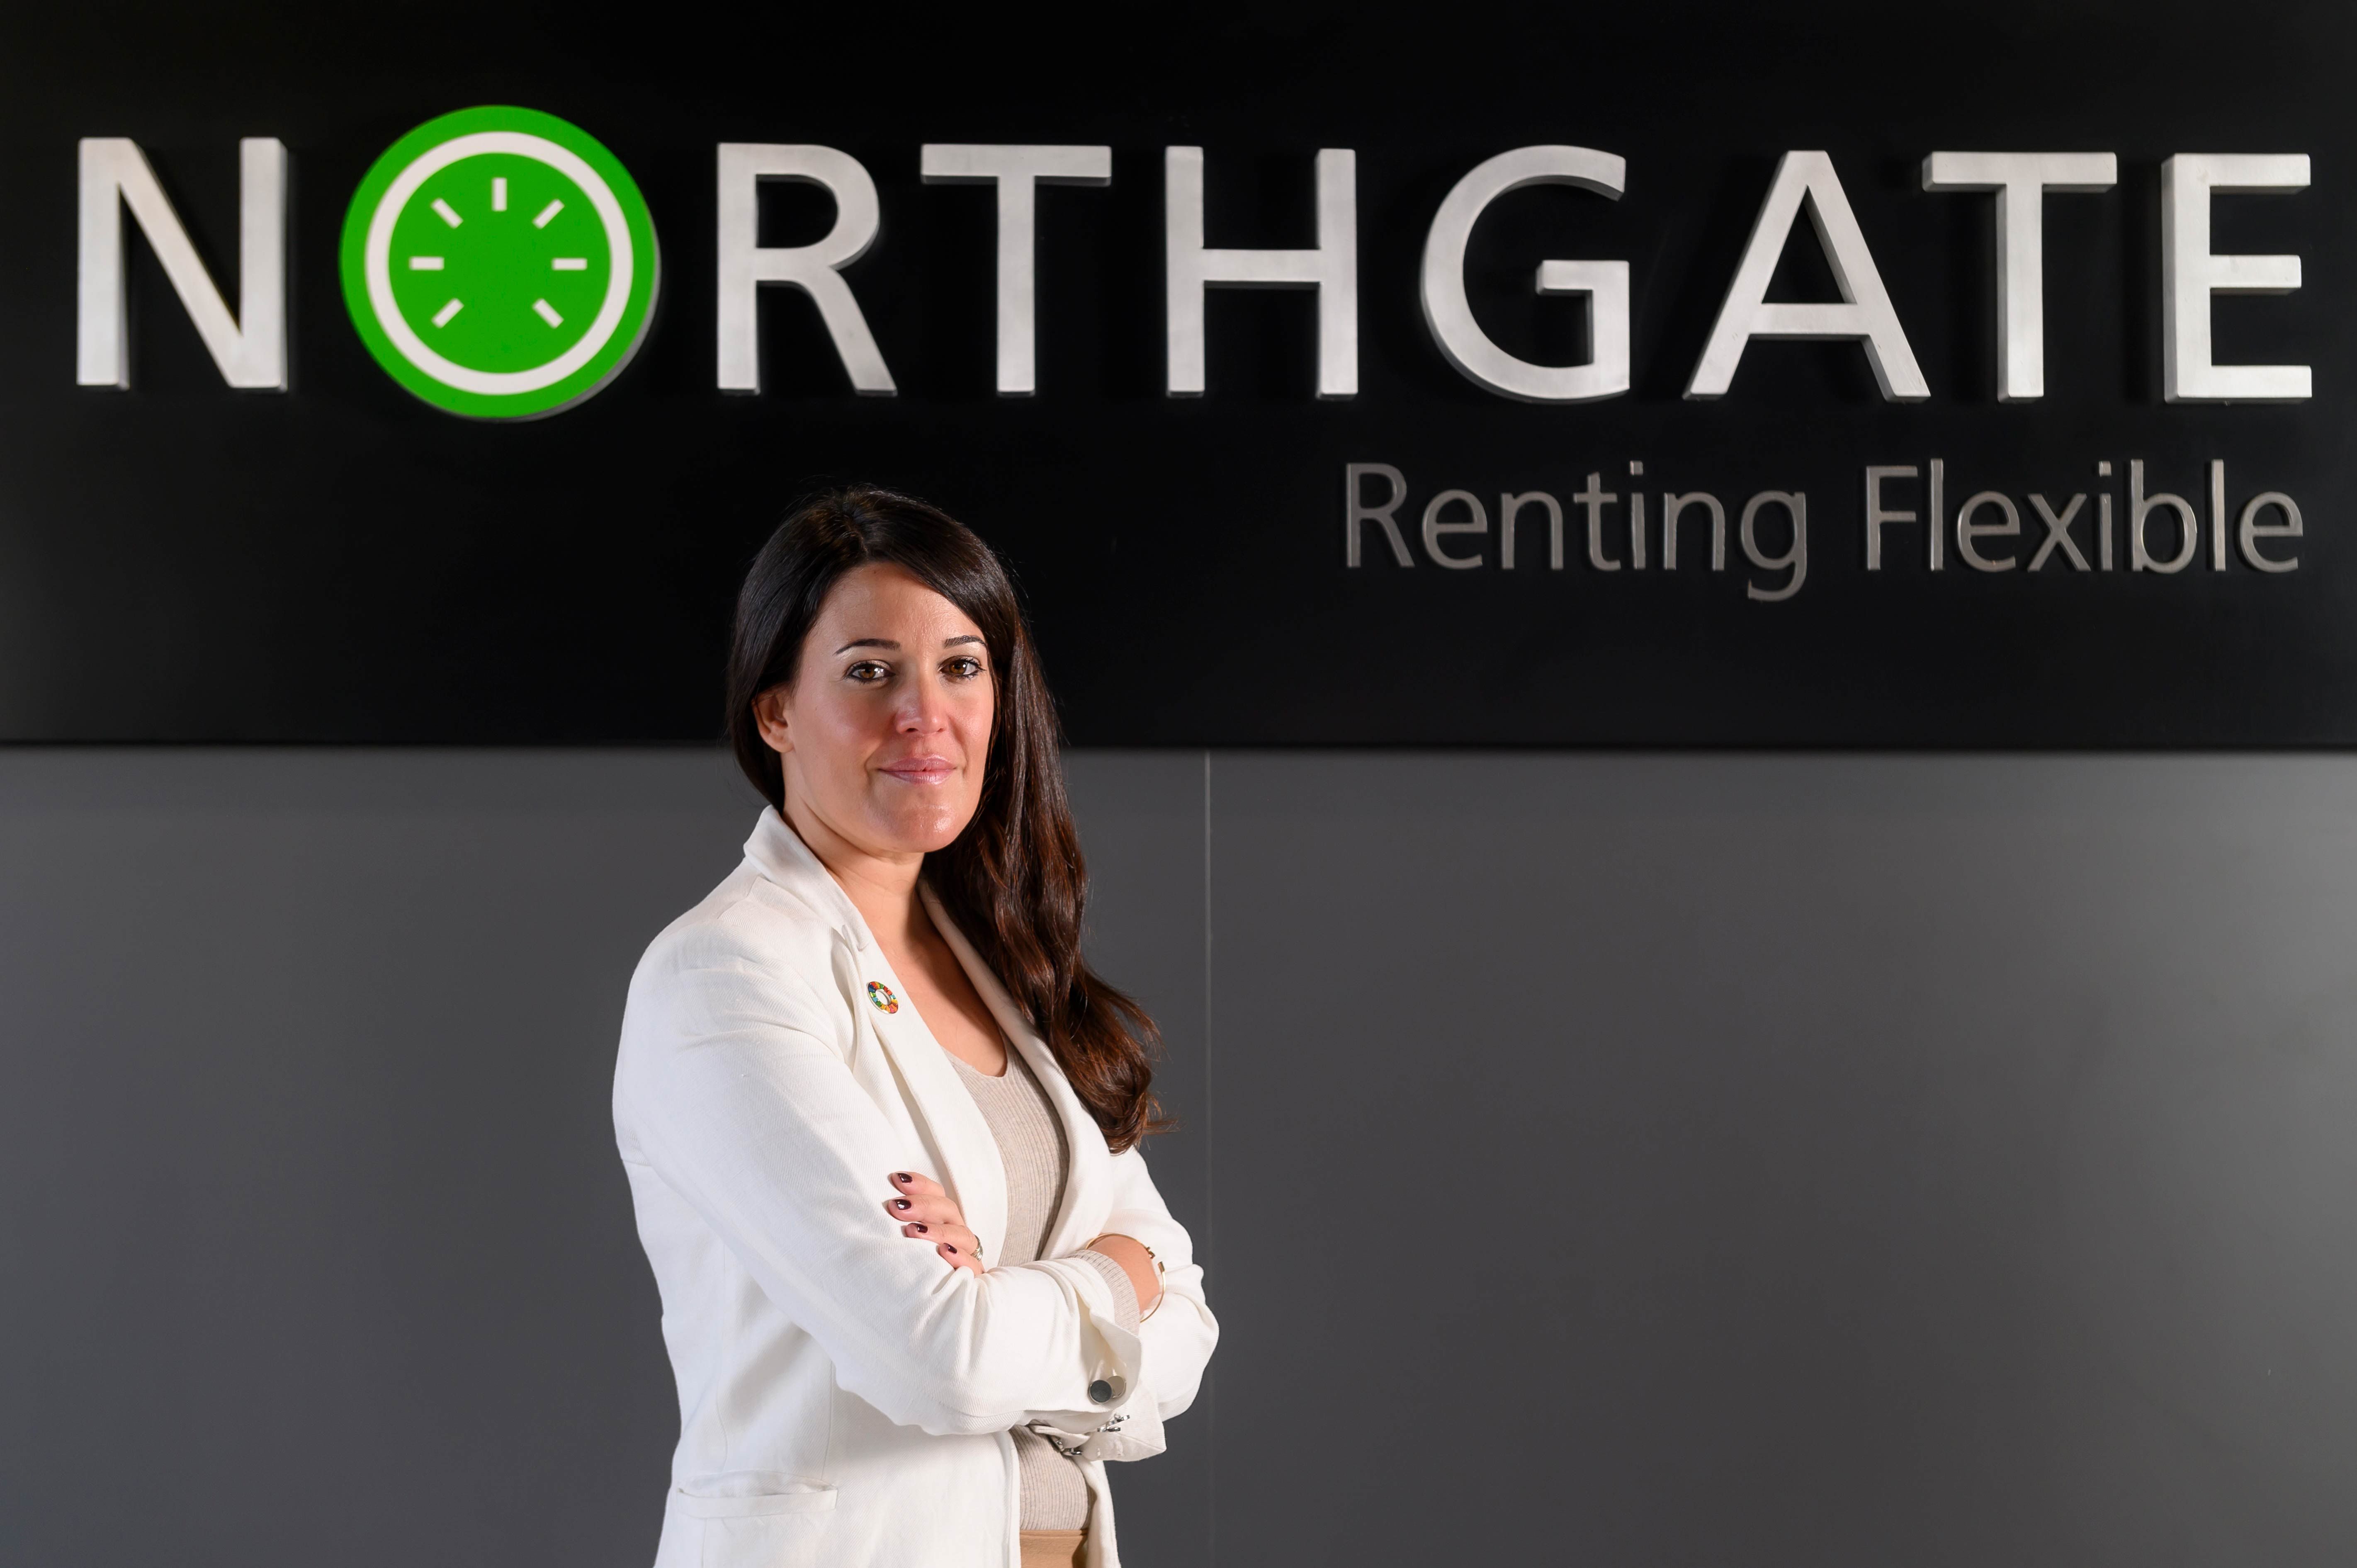 Northgate Renting Flexible refuerza su apuesta por el Desarrollo y la Sostenibilidad